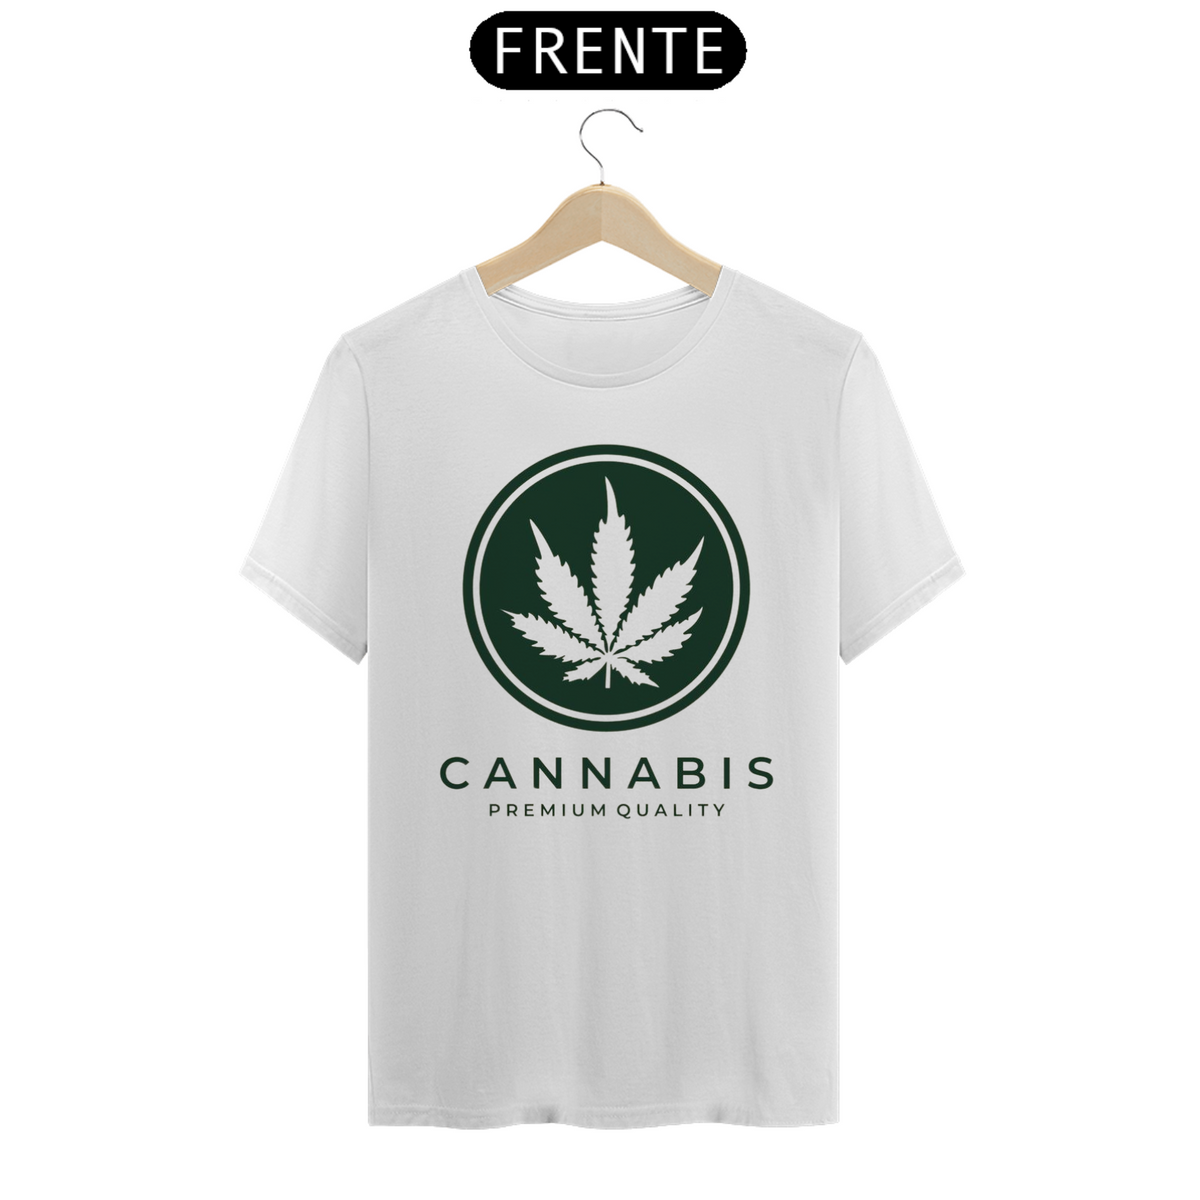 Nome do produto: Cannabis